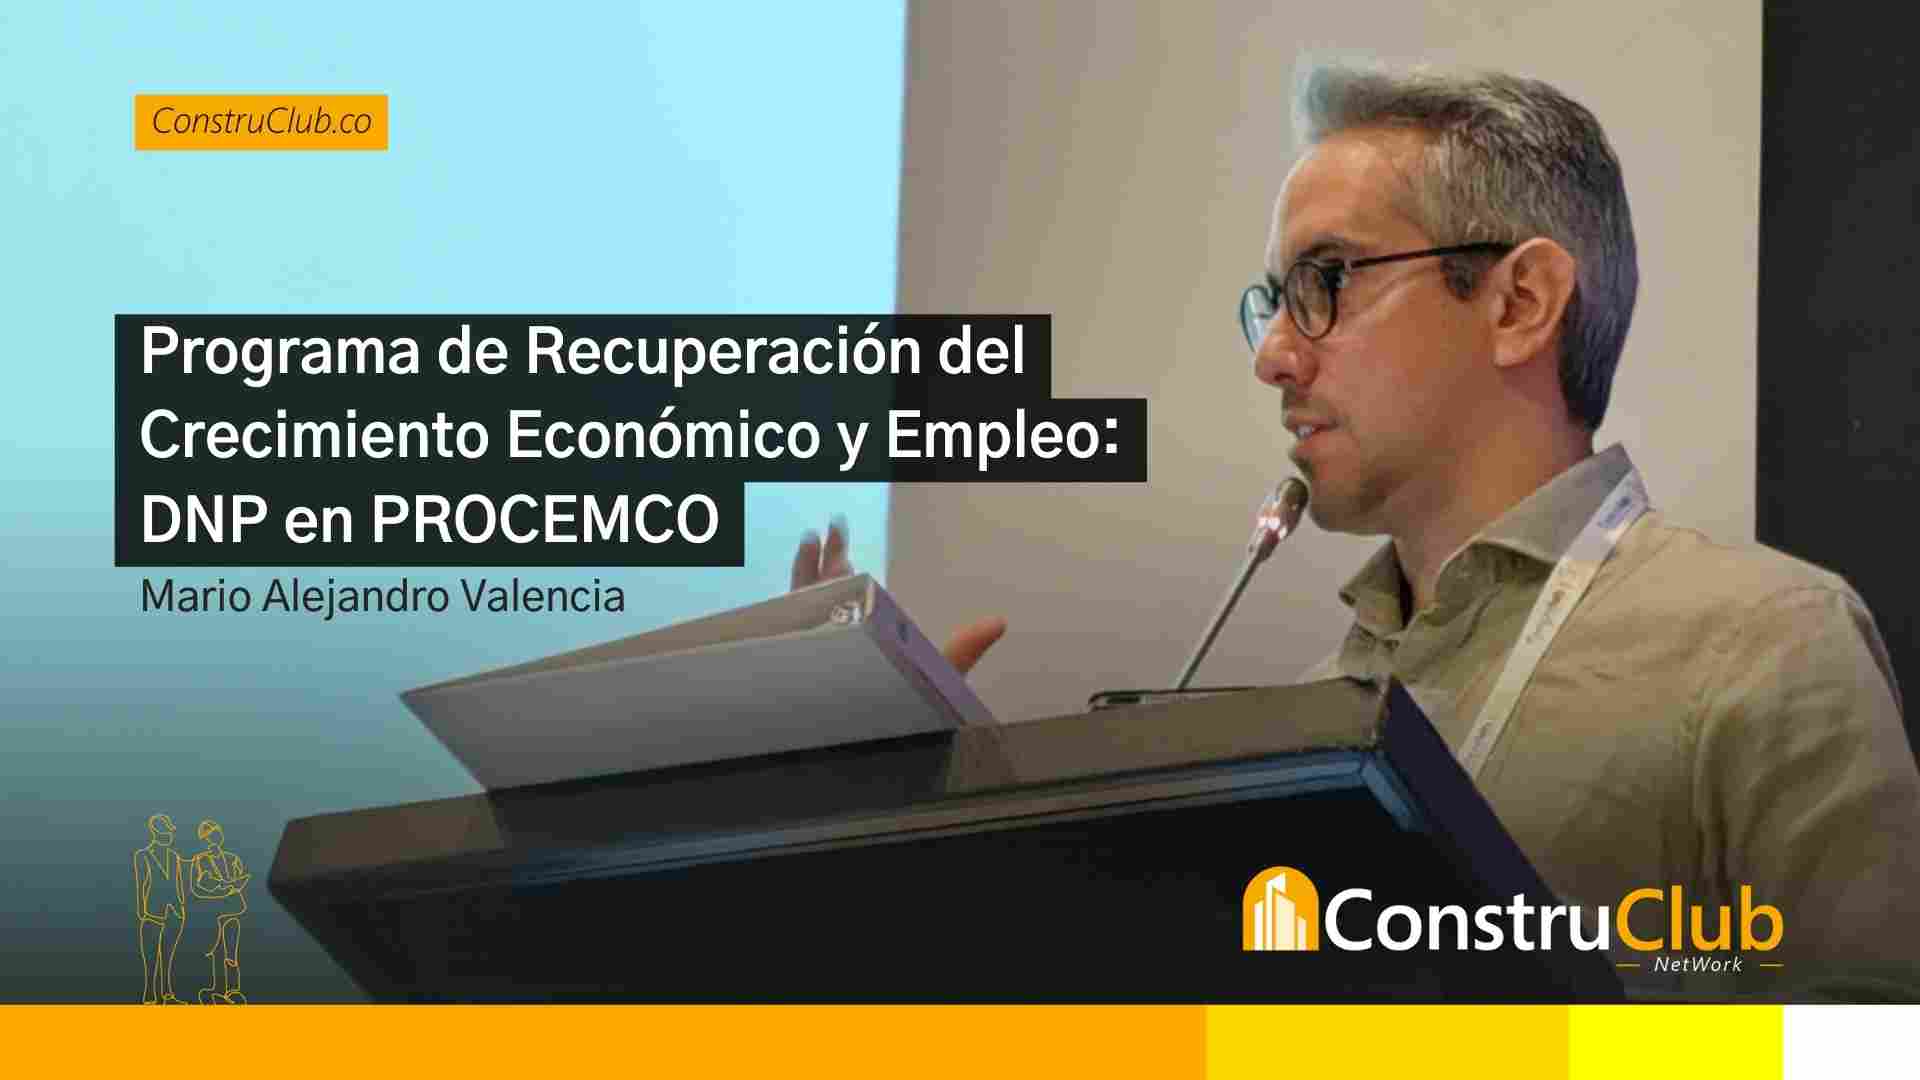 Programa de Recuperación del Crecimiento Económico y Empleo: La Charla de Mario Alejandro Valencia en PROCEMCO